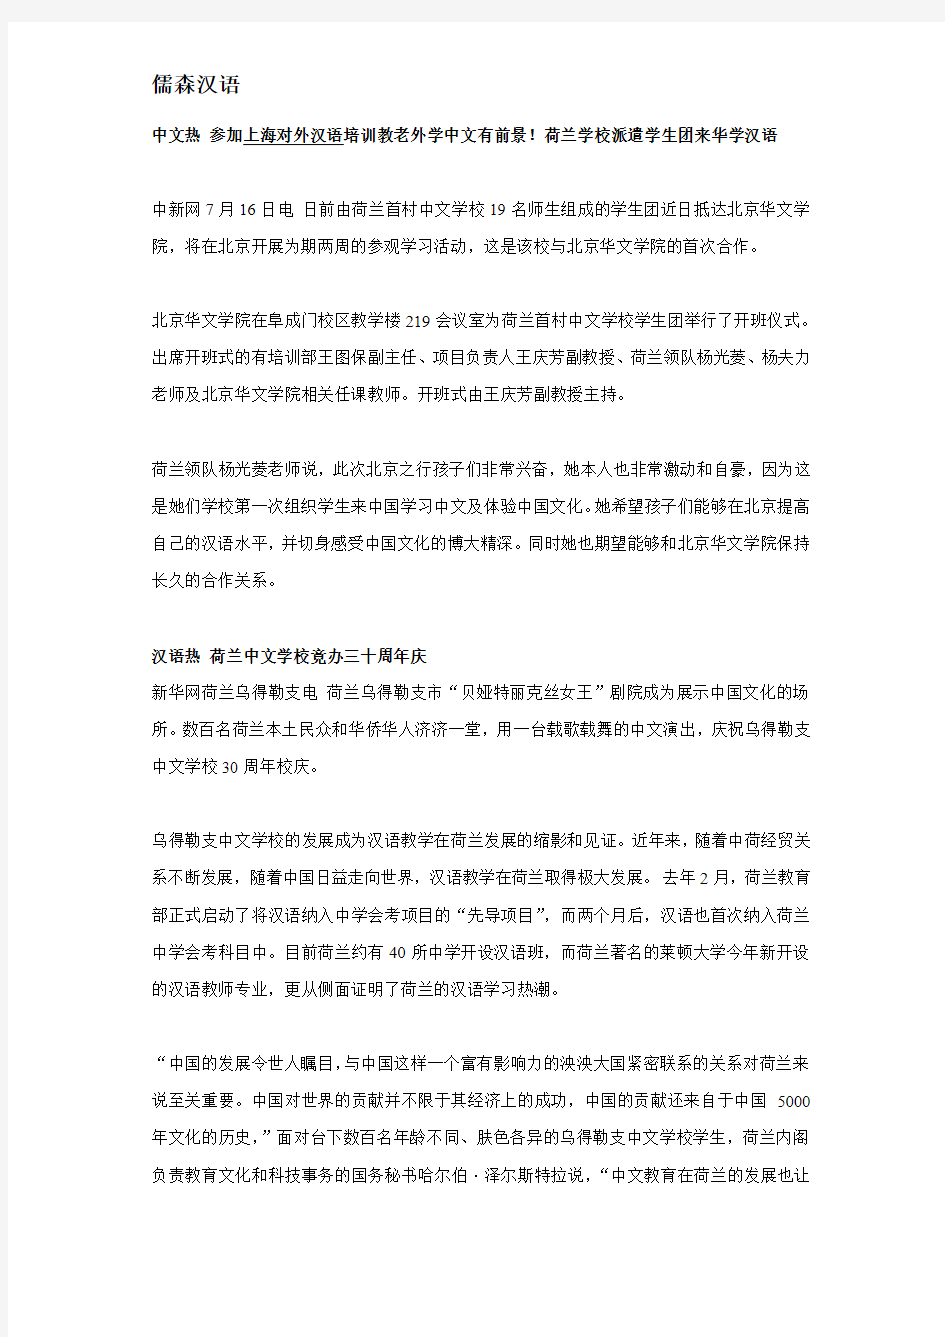 中文热 参加上海对外汉语培训教老外学中文有前景!荷兰学校派遣学生团来华学汉语